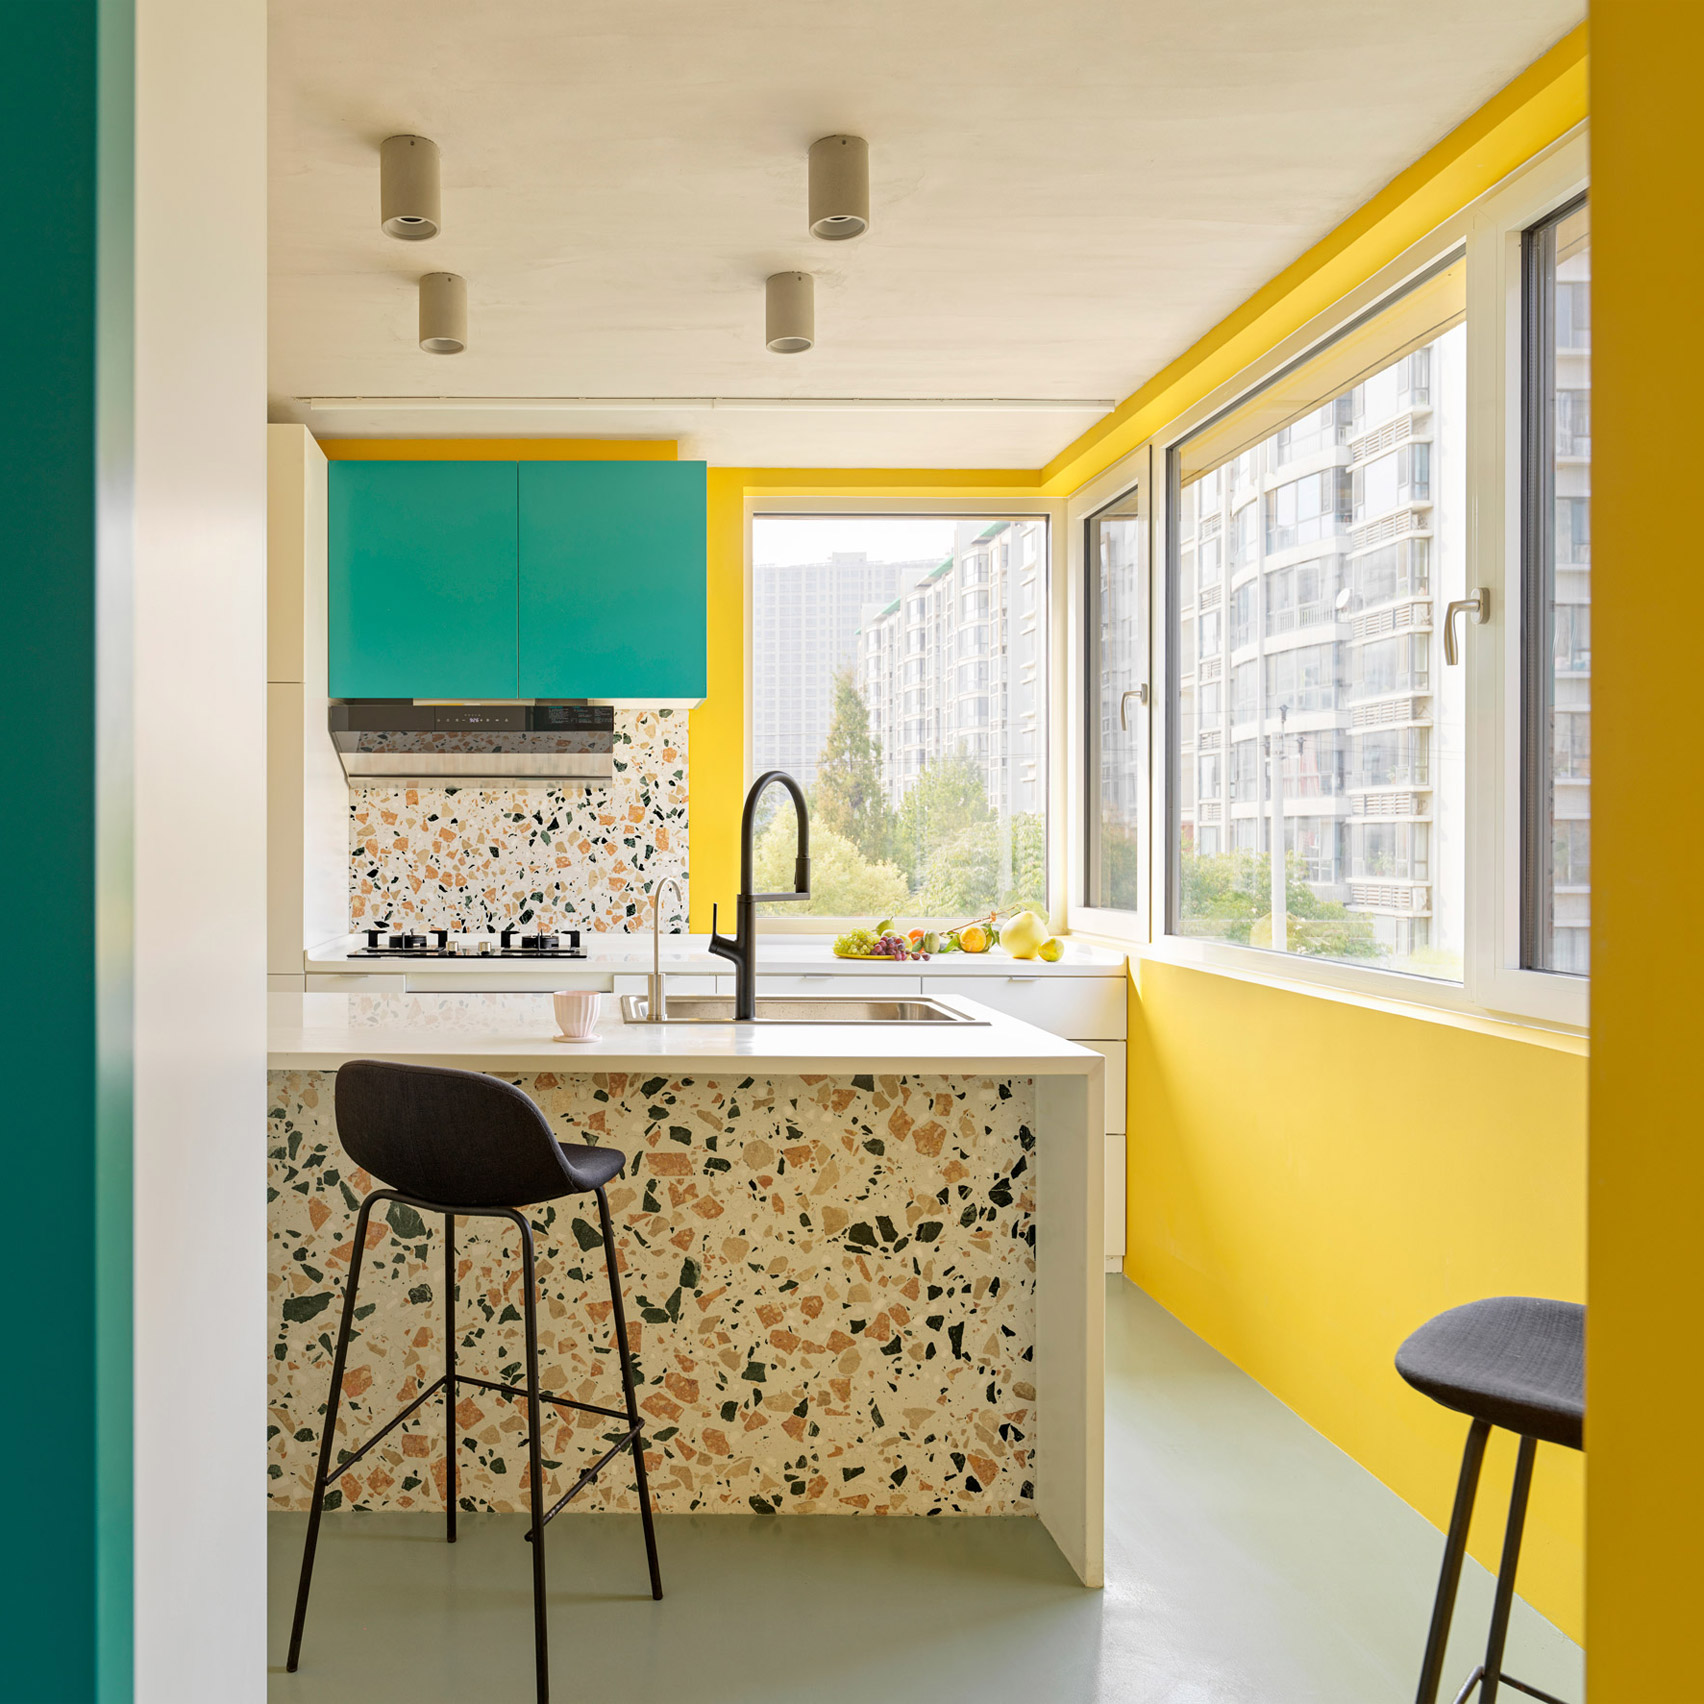 DDM Studio đã kết hợp những bức tường màu vàng rực rỡ với nội thất (tủ bếp) sơn màu xanh ngọc, gạch terrazzo ở khu vực backsplash và đảo bếp kết hợp ô cửa kính đầy nắng cho cái nhìn tươi tắn, đầy sức sống.